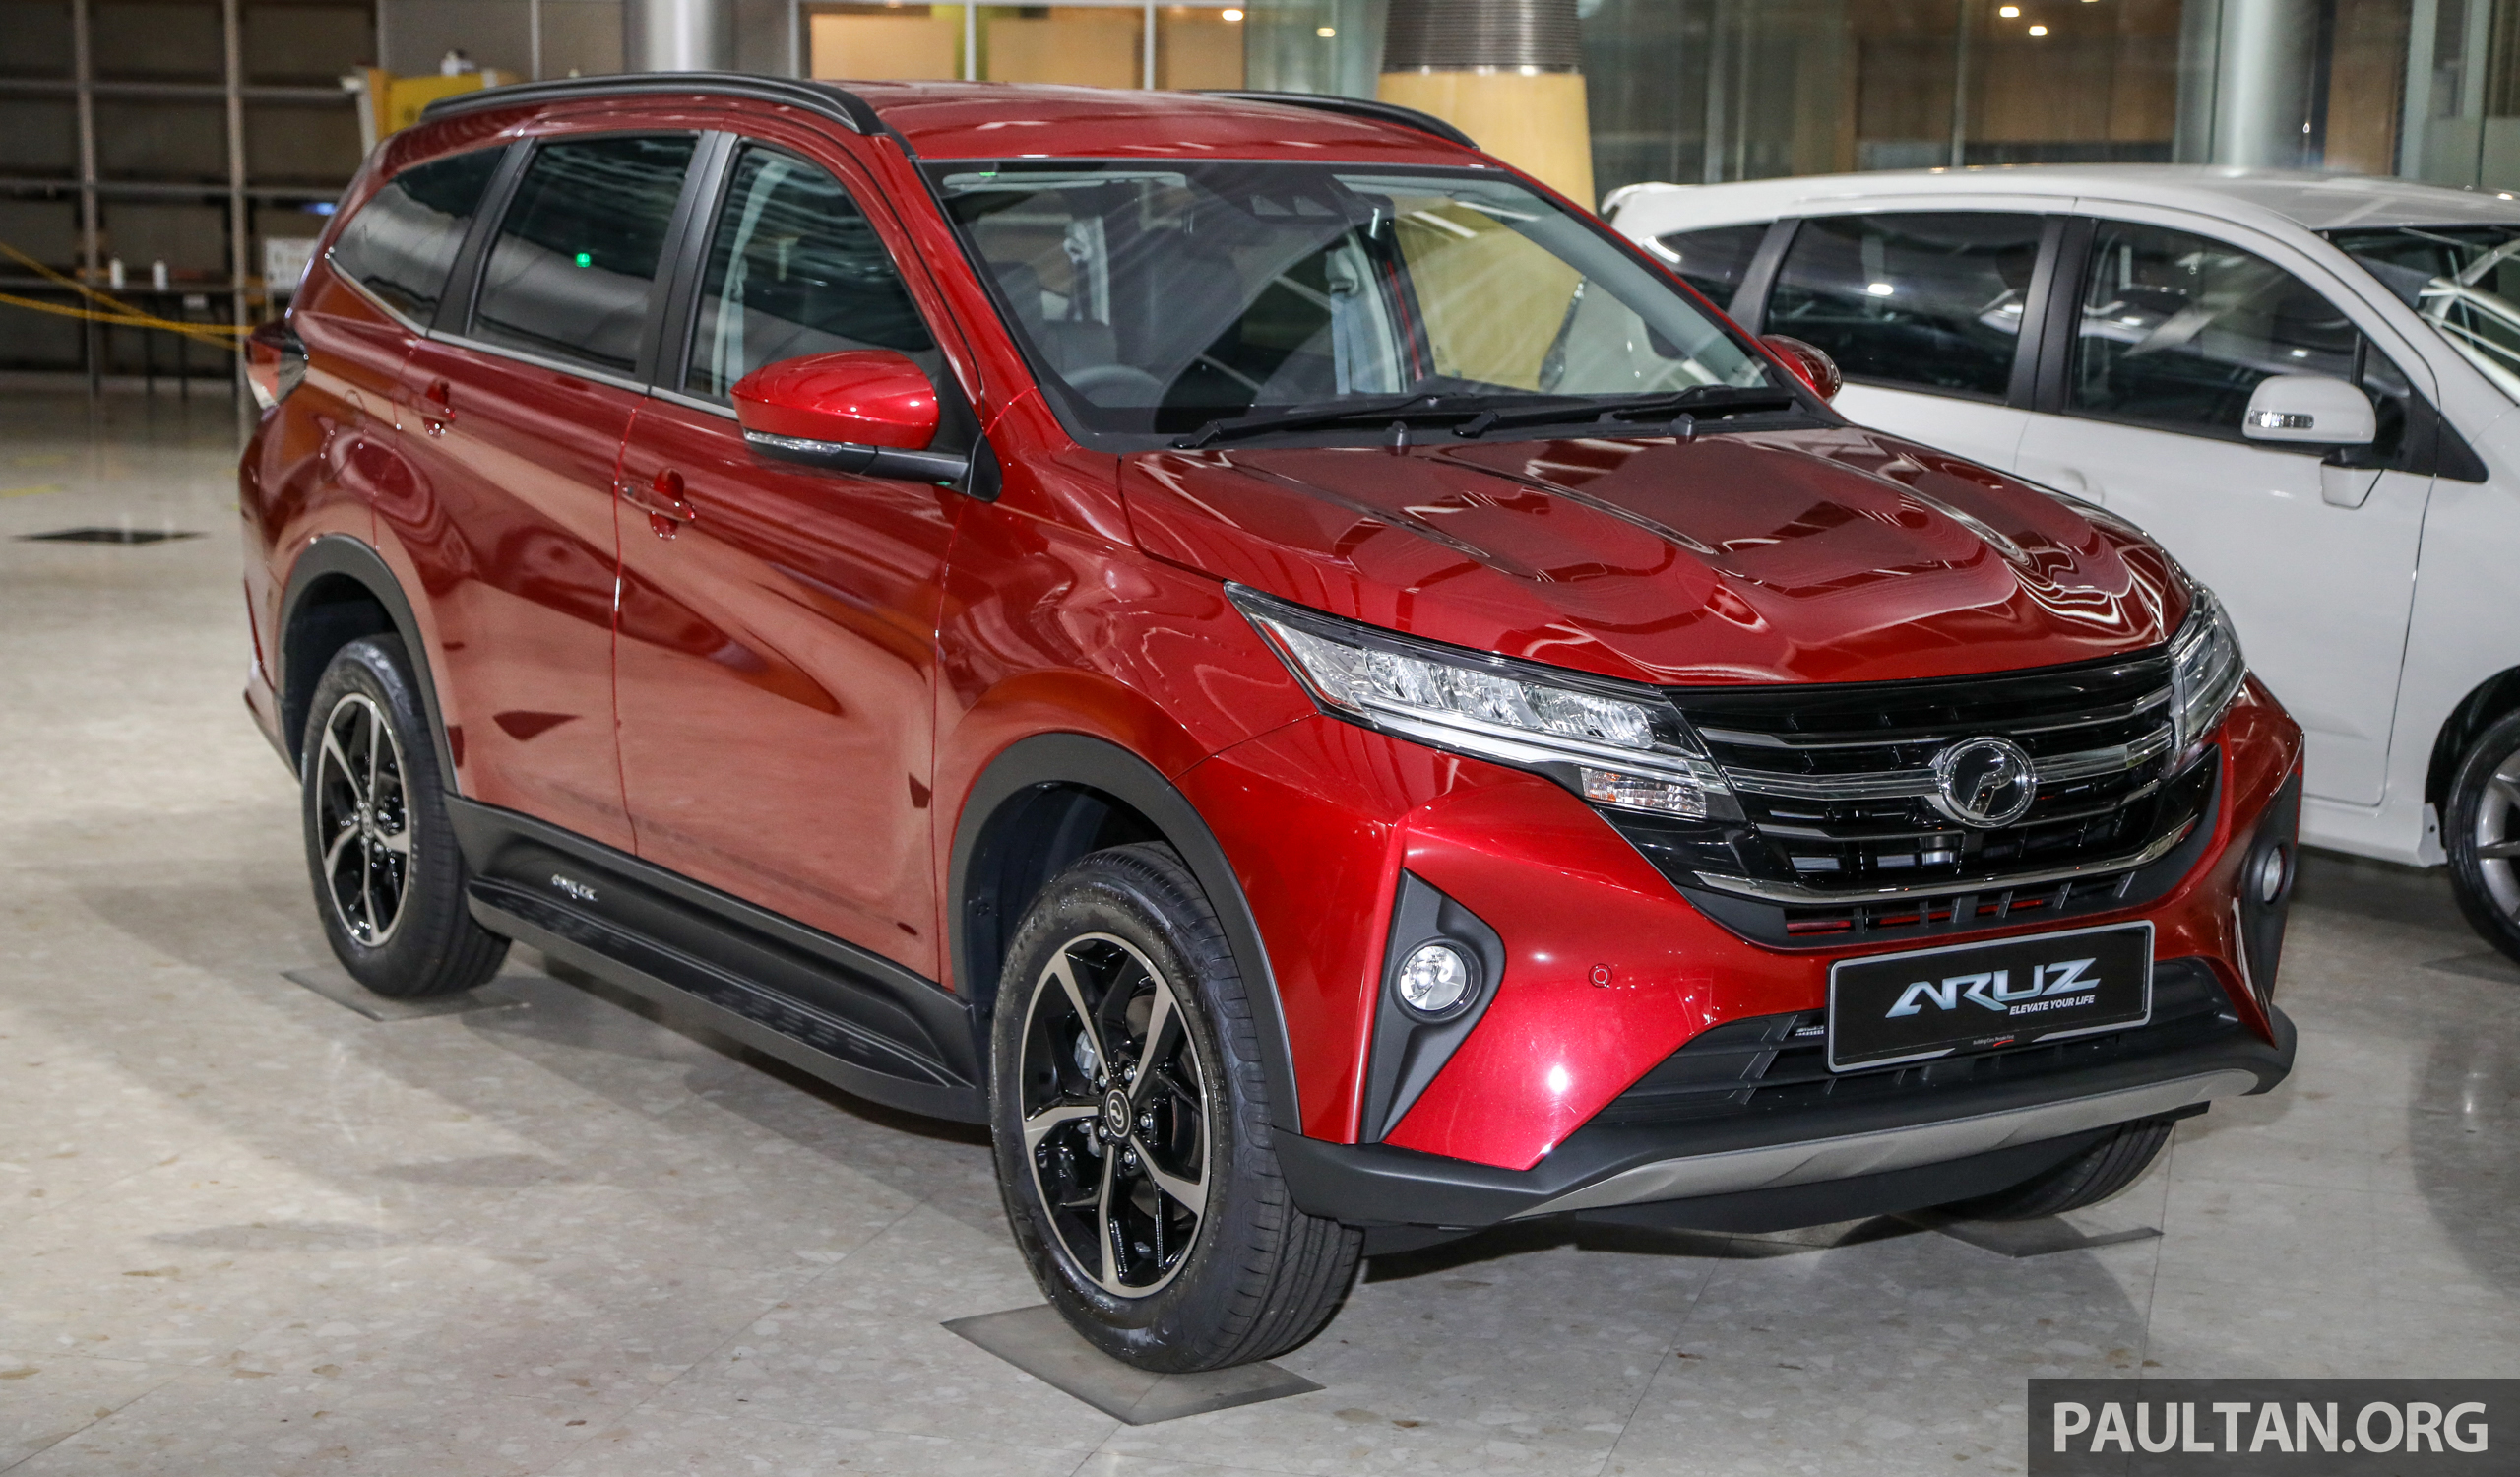 Malaysia aruz price Perodua Aruz